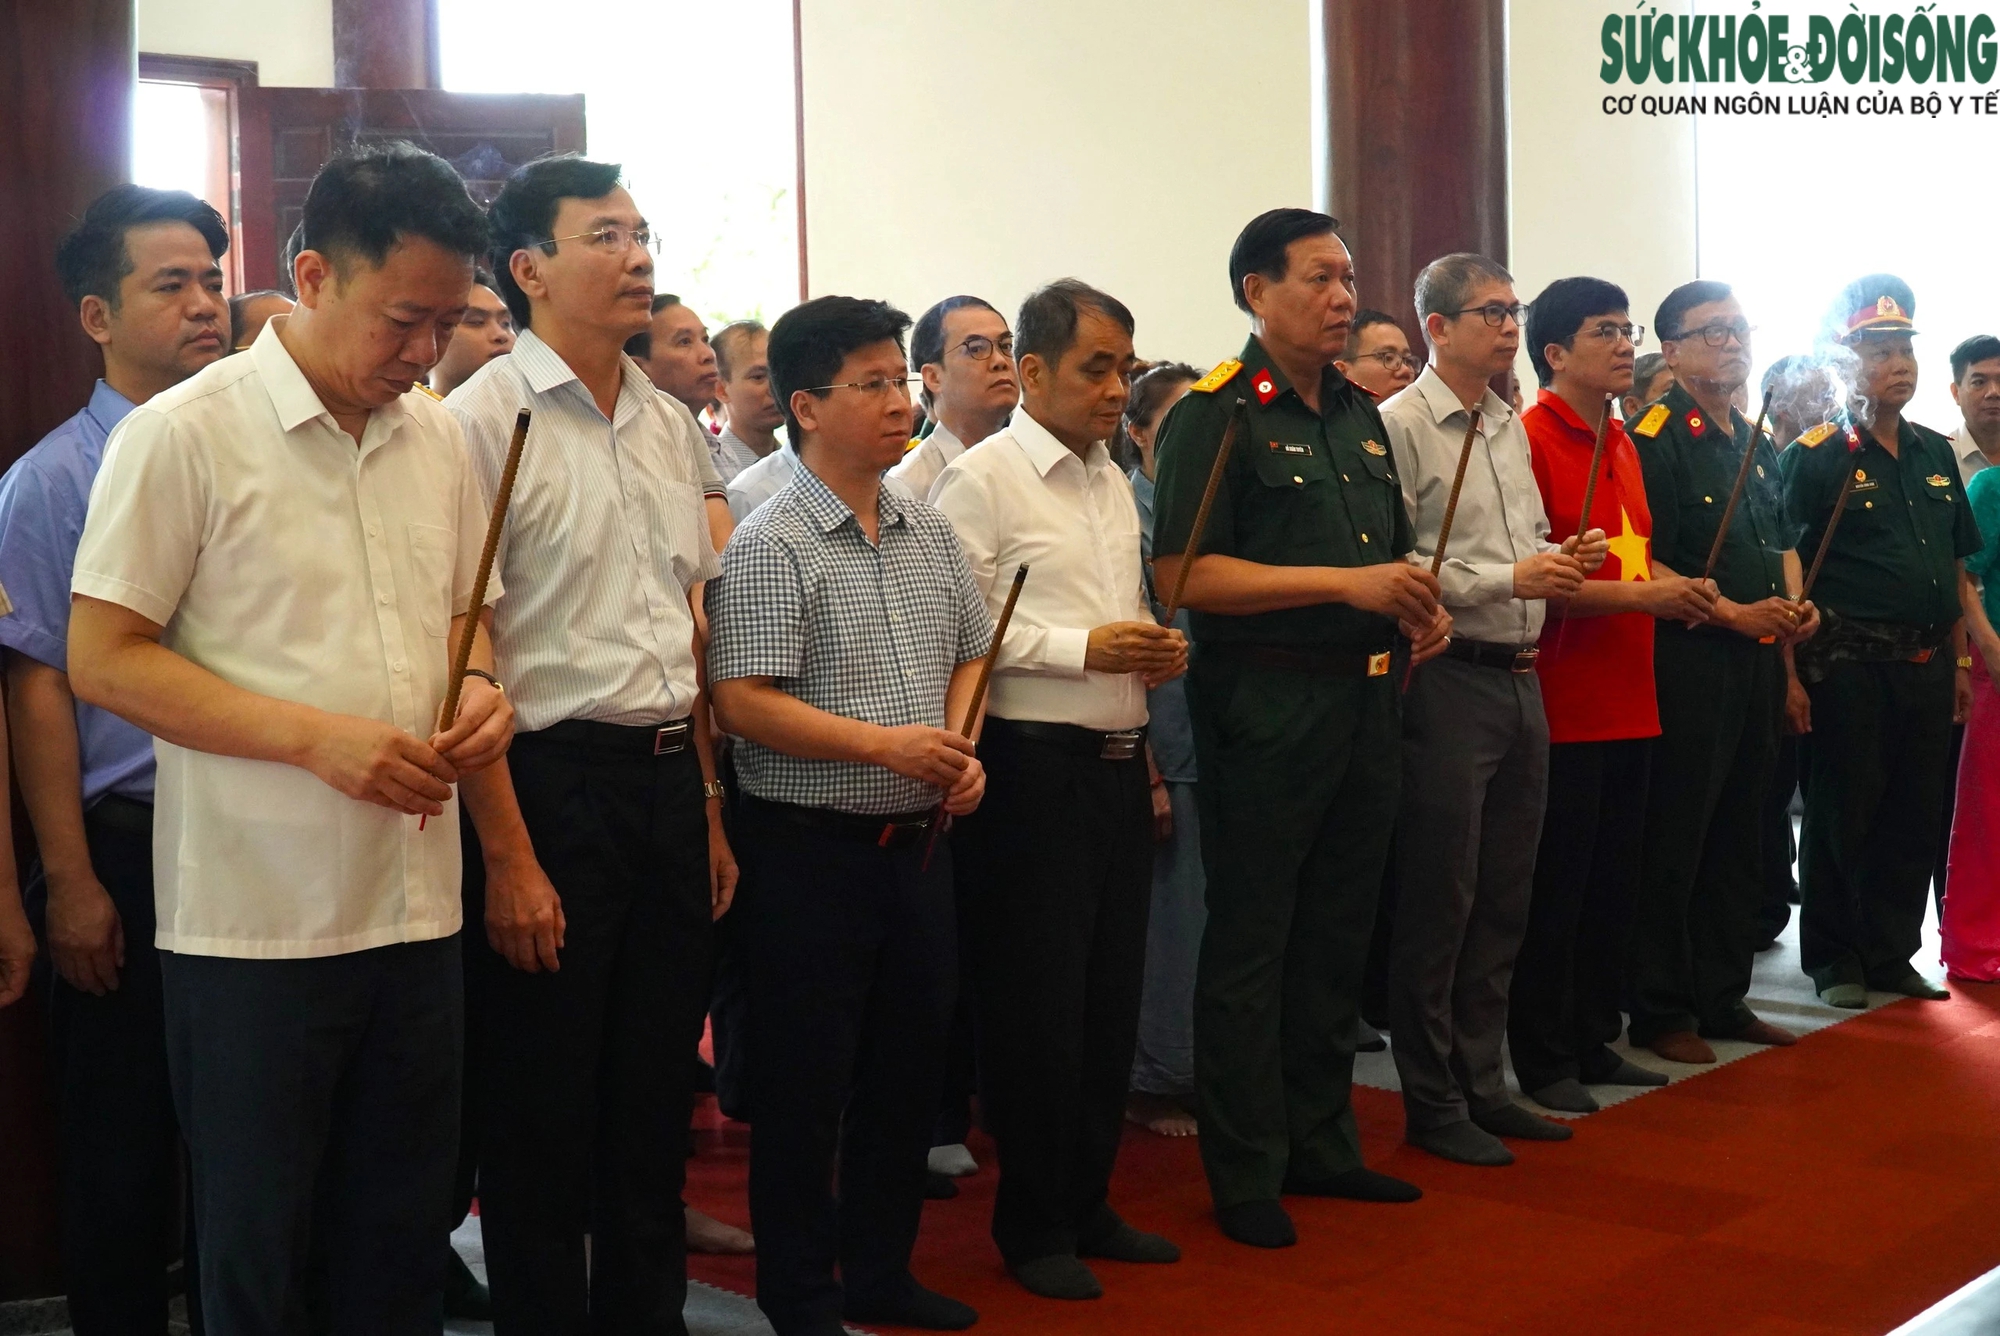 Hội Cựu chiến binh Bộ Y tế thăm lại chiến trường xưa và tri ân các anh hùng liệt sỹ tại Cao Bằng- Ảnh 9.